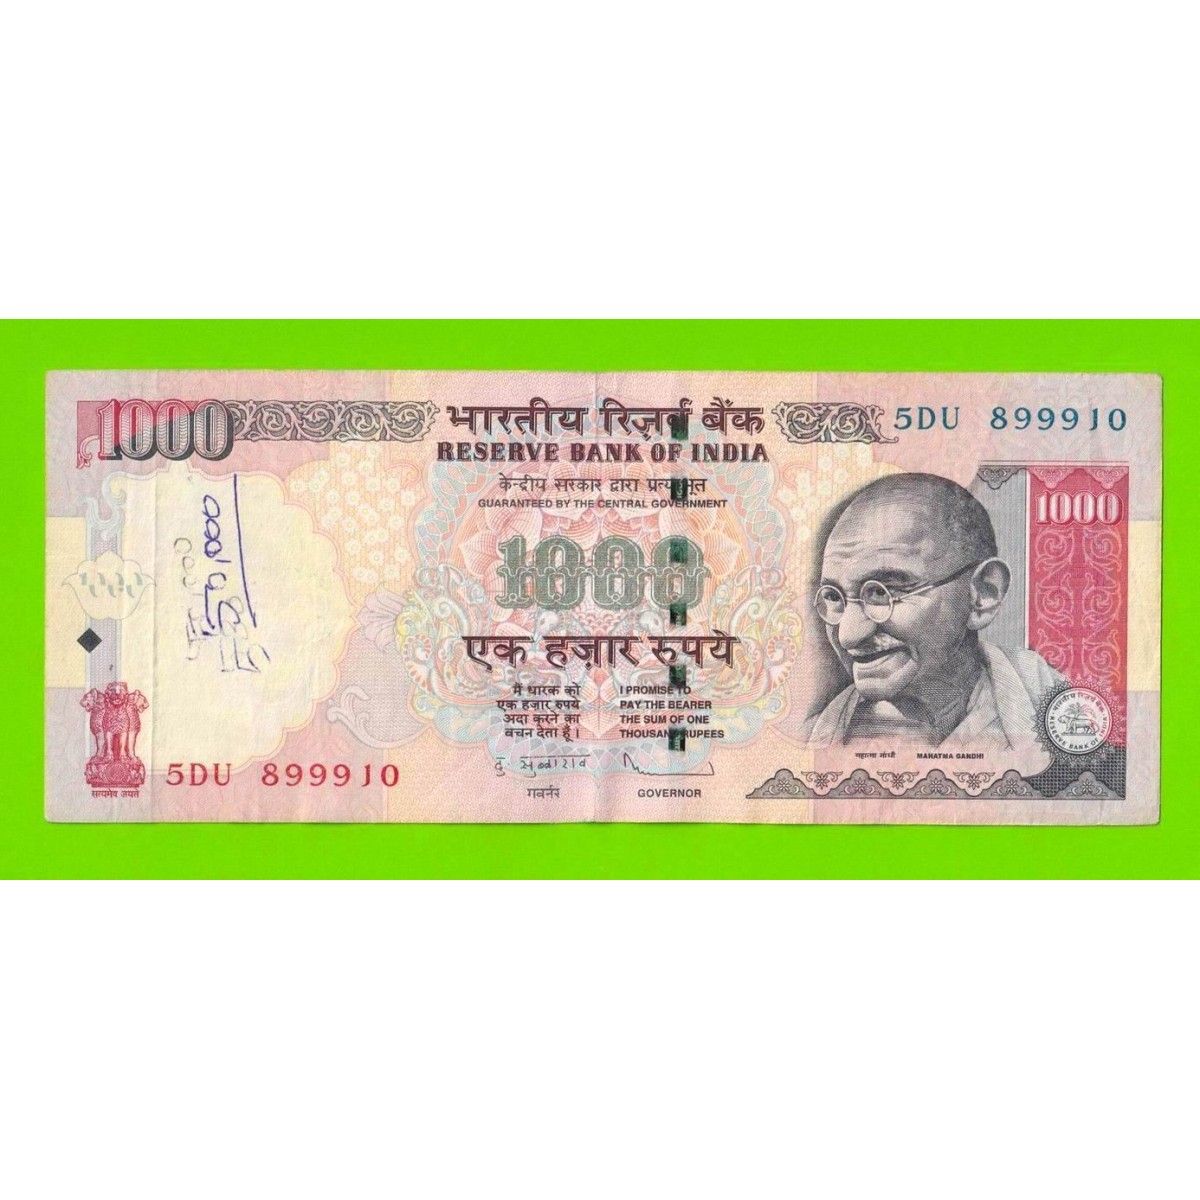 Рупия конвертация. 1000 Индийских рупий. Индийская валюта 1000. Индонезийская валюта в 1000. Банкноты 1000 рупий.